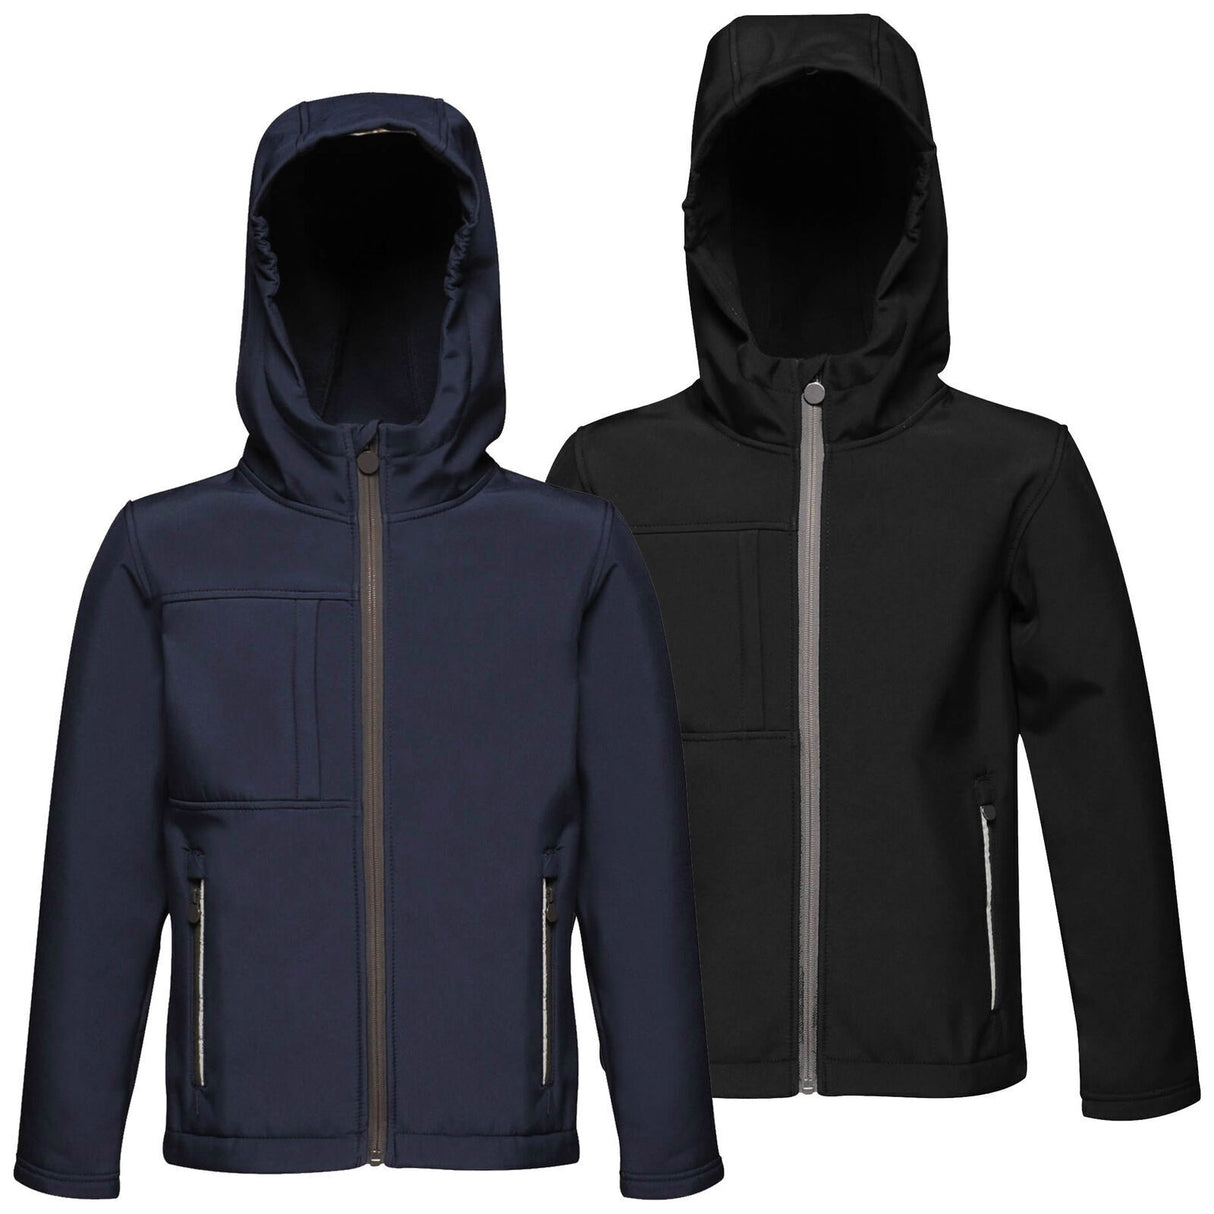 Regatta Octagon Kids Boys Girls School Hooded Lined Softshell Jacket RRP £55